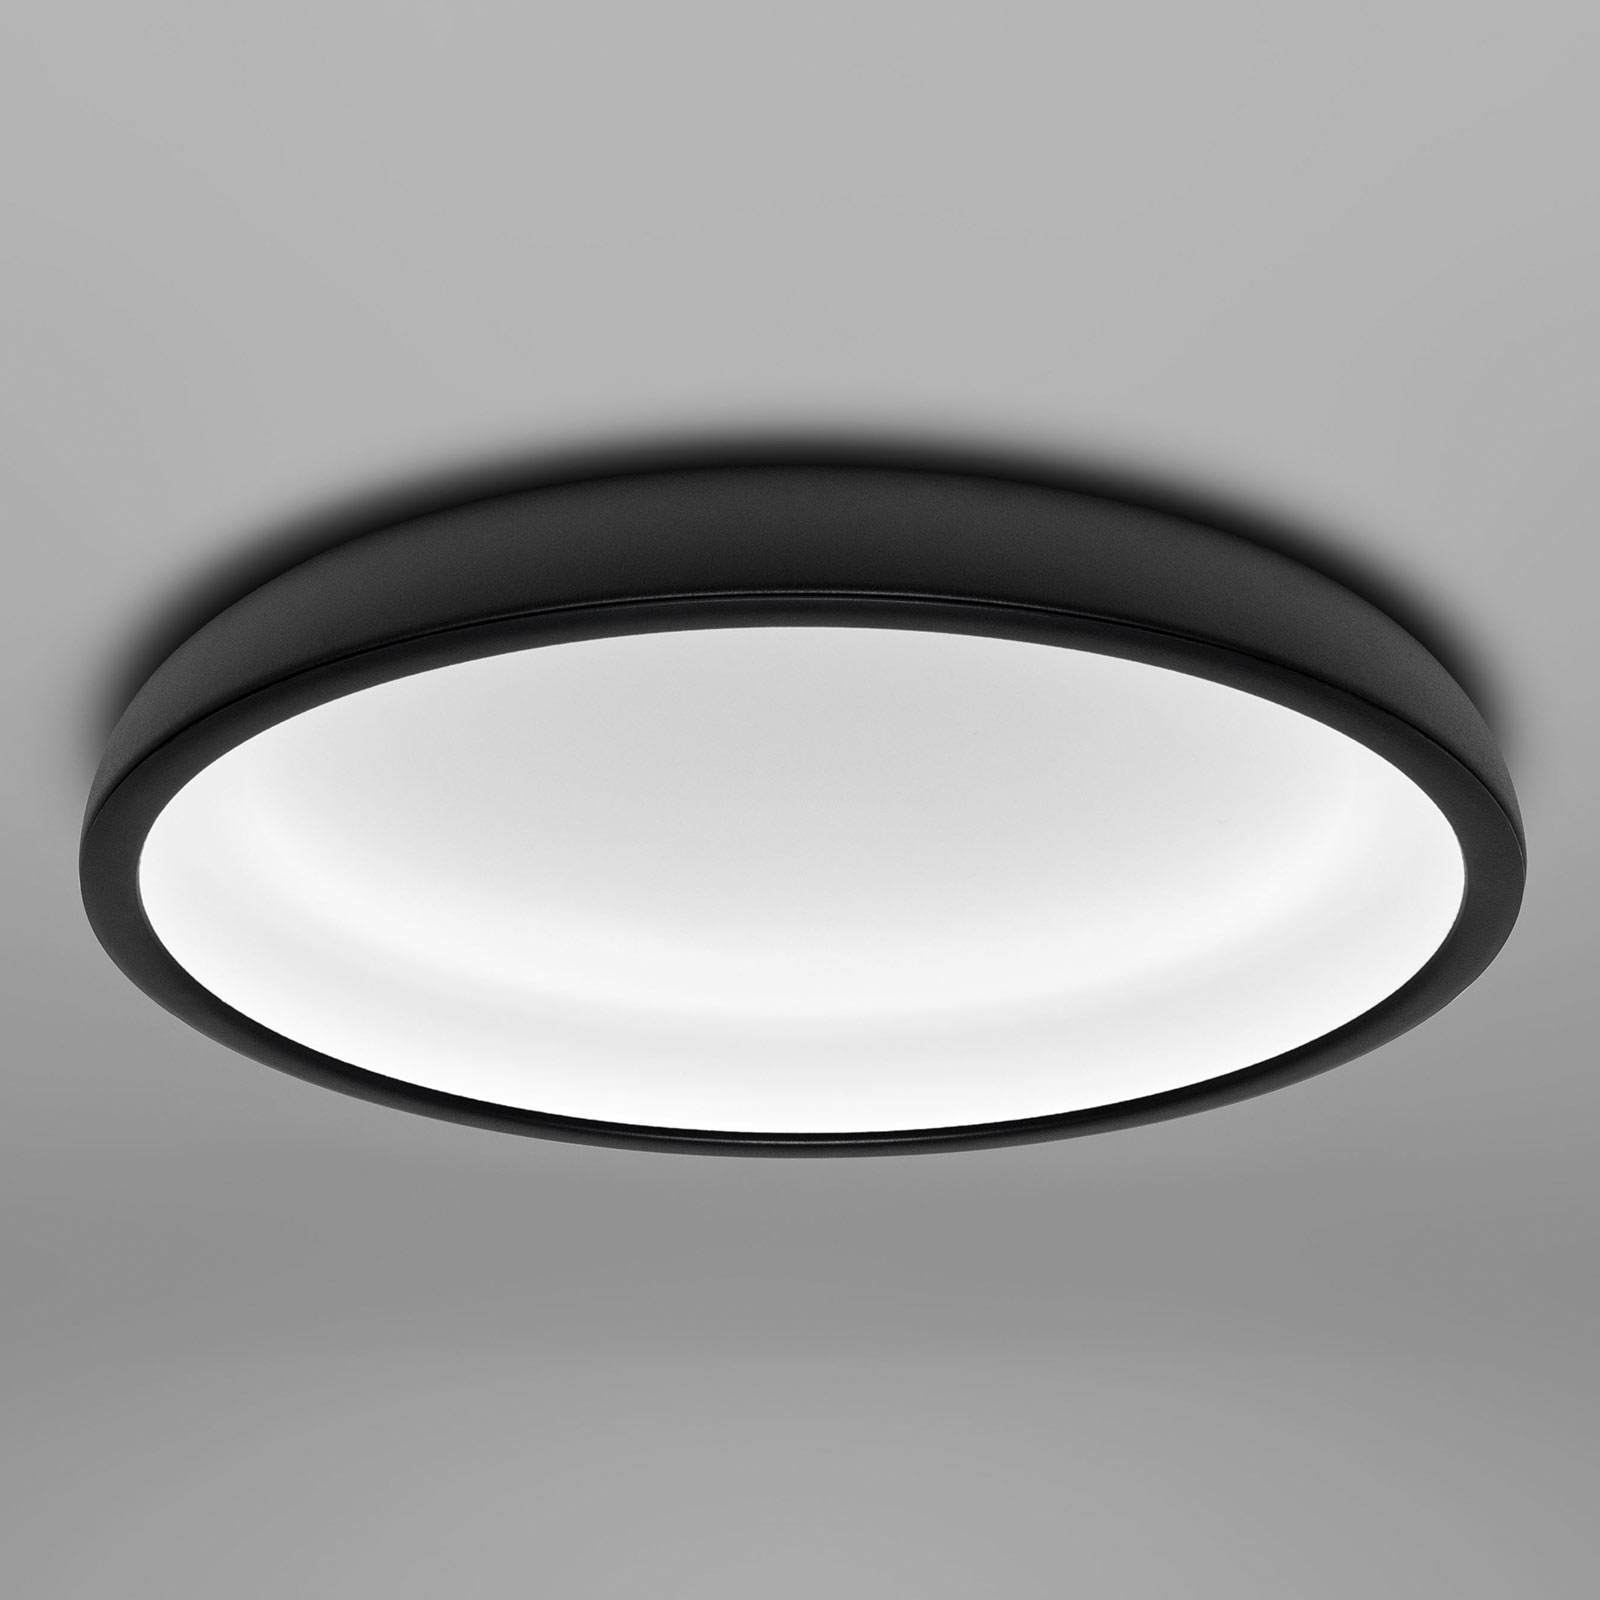 Lampa sufitowa LED Reflexio, Ø 46cm, czarna